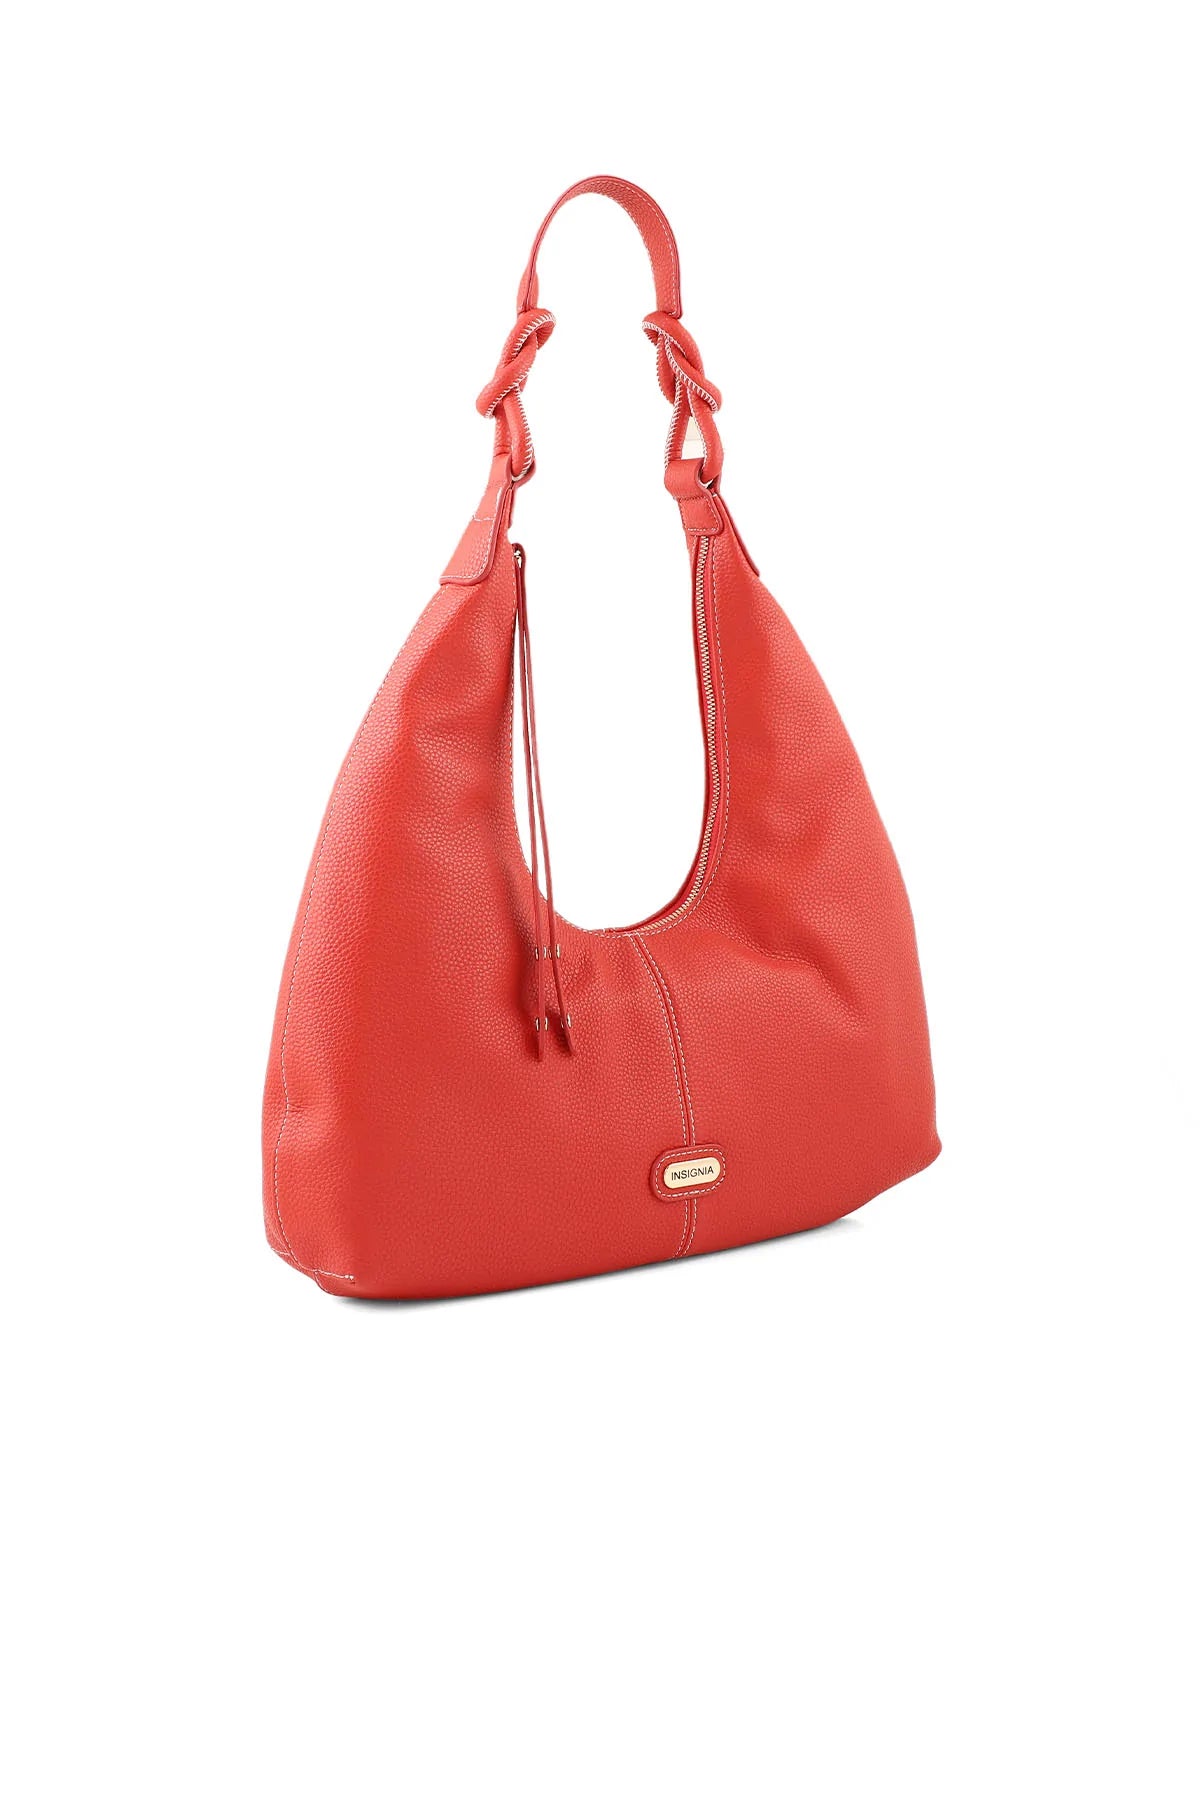 Hobo Hand Bags B15022-Red